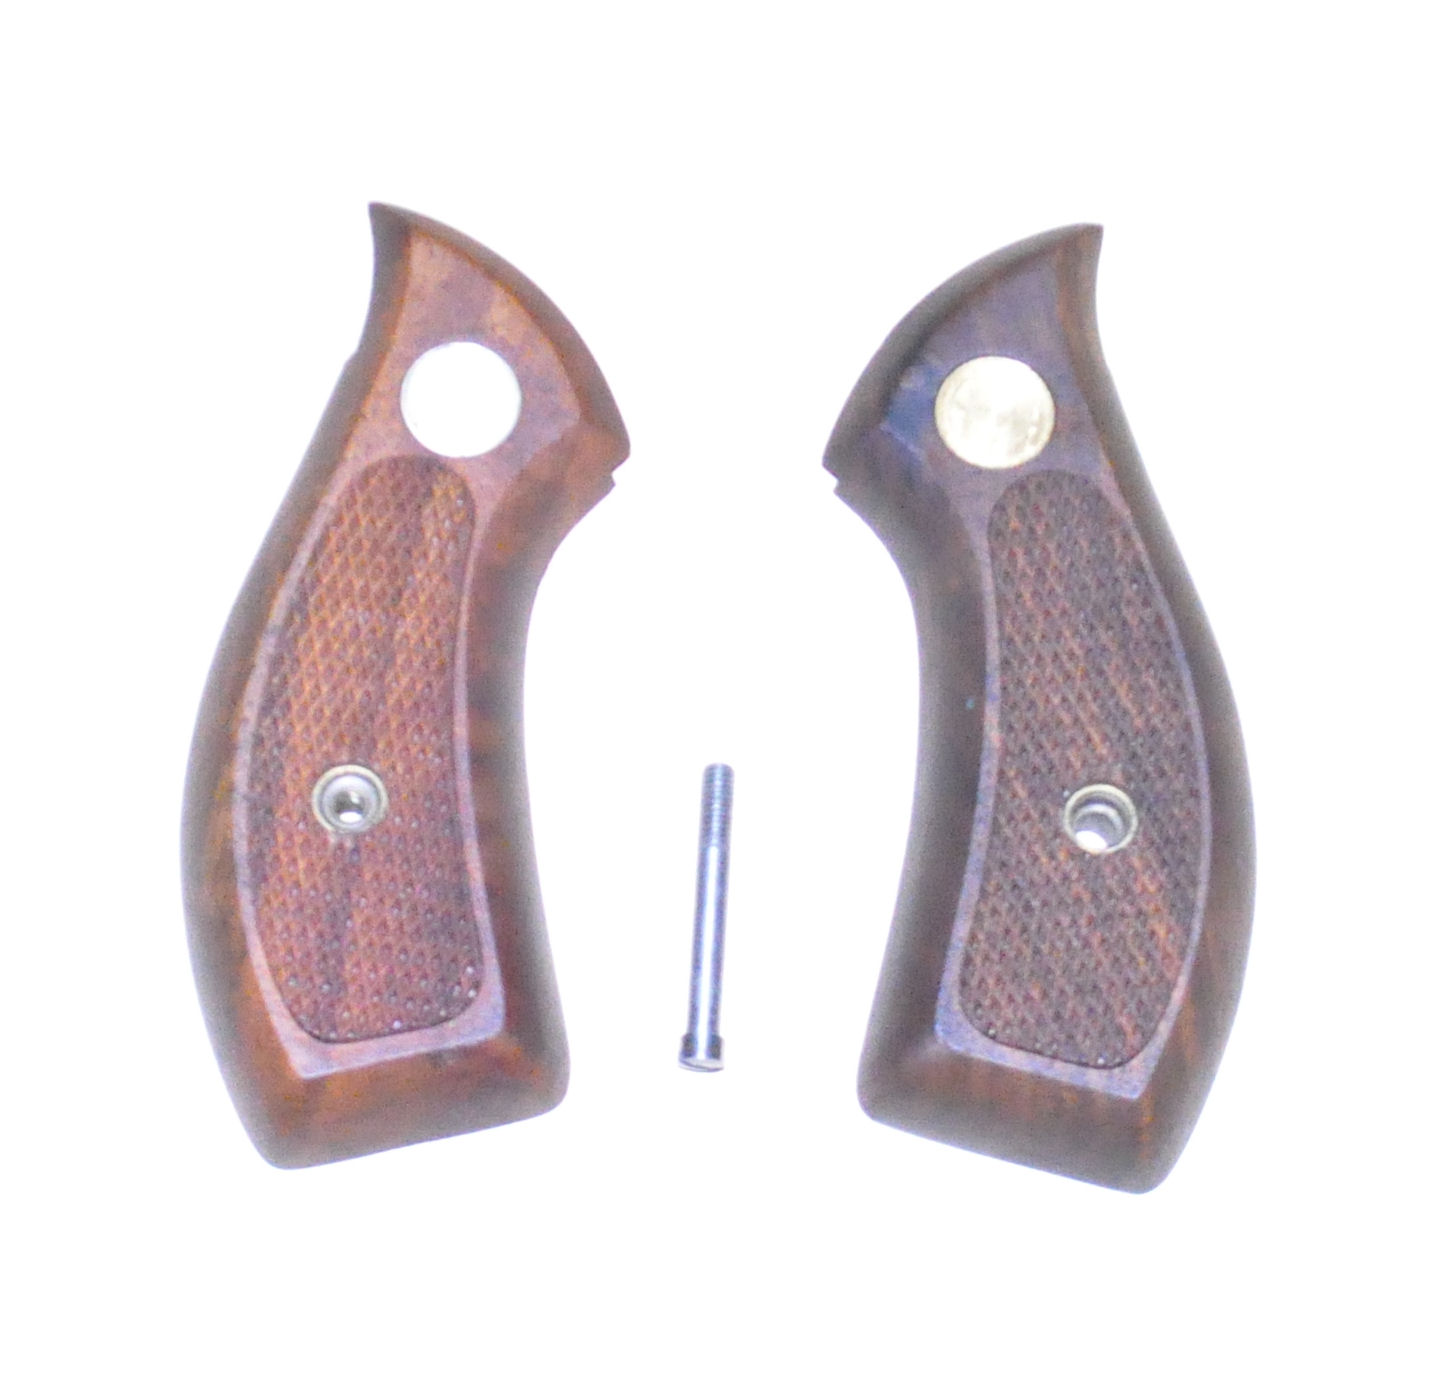 Erma revolver Small Frame original grips